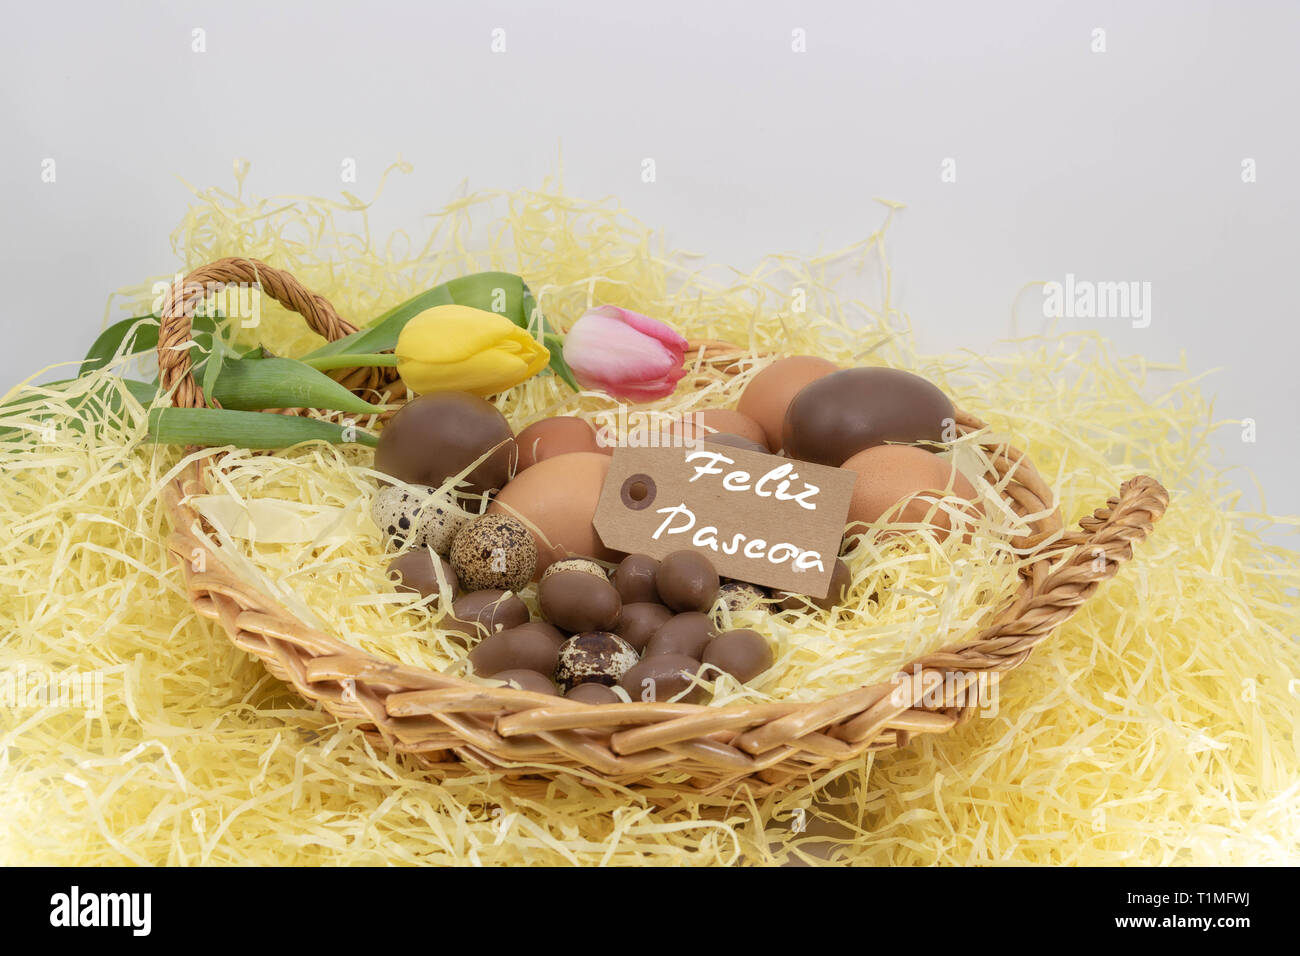 Feliz pascoa Joyeuses Pâques est écrit en portugais sur une étiquette pour des ressources graphiques sur le thème de Pâques et l'arrivée du printemps Banque D'Images